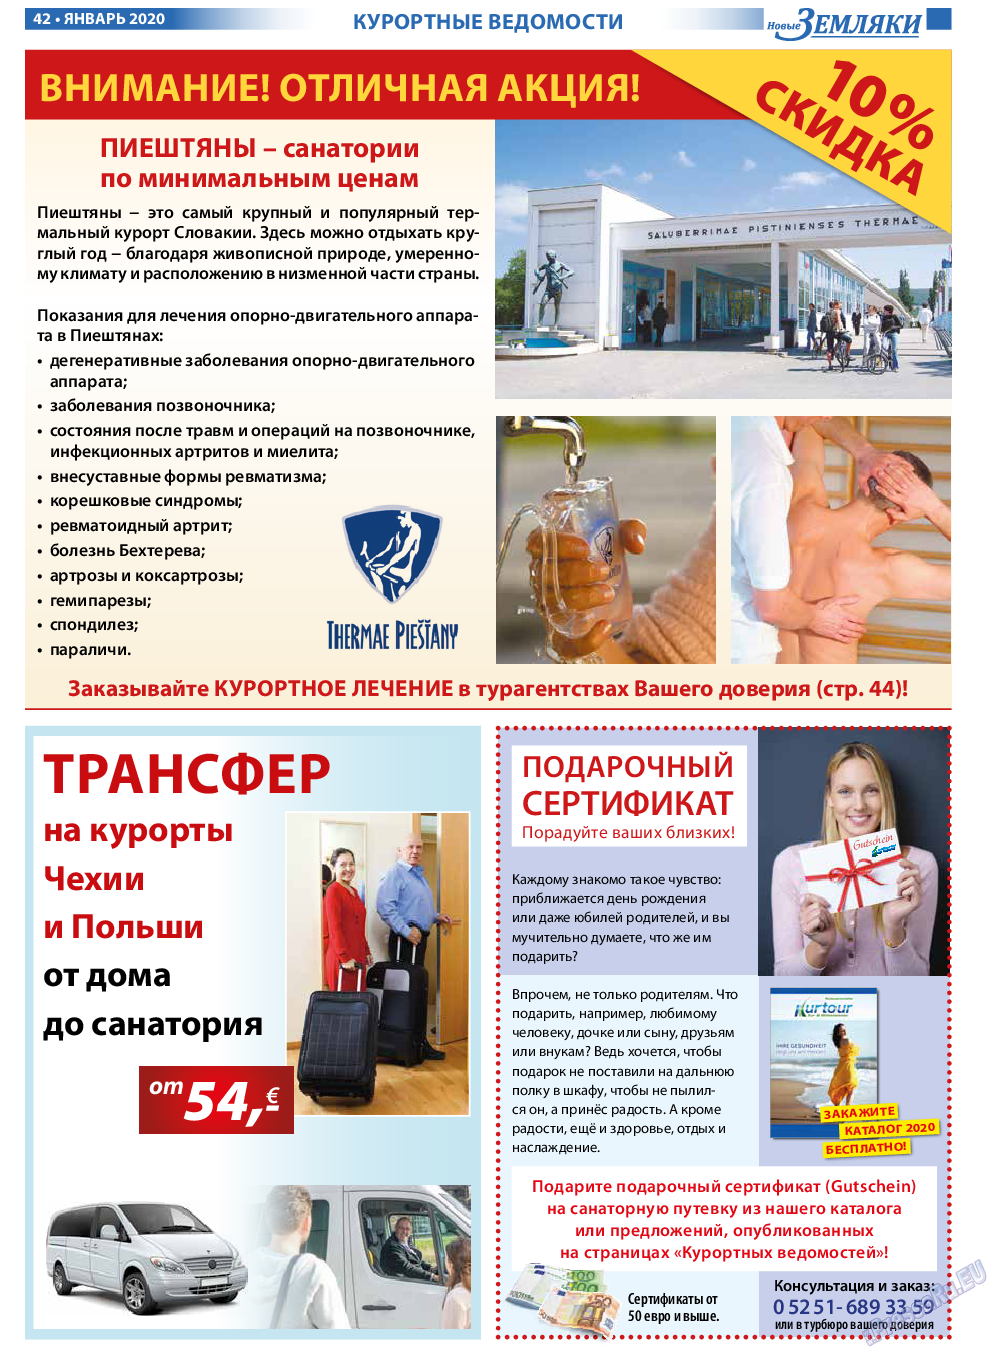 Новые Земляки, газета. 2020 №1 стр.42